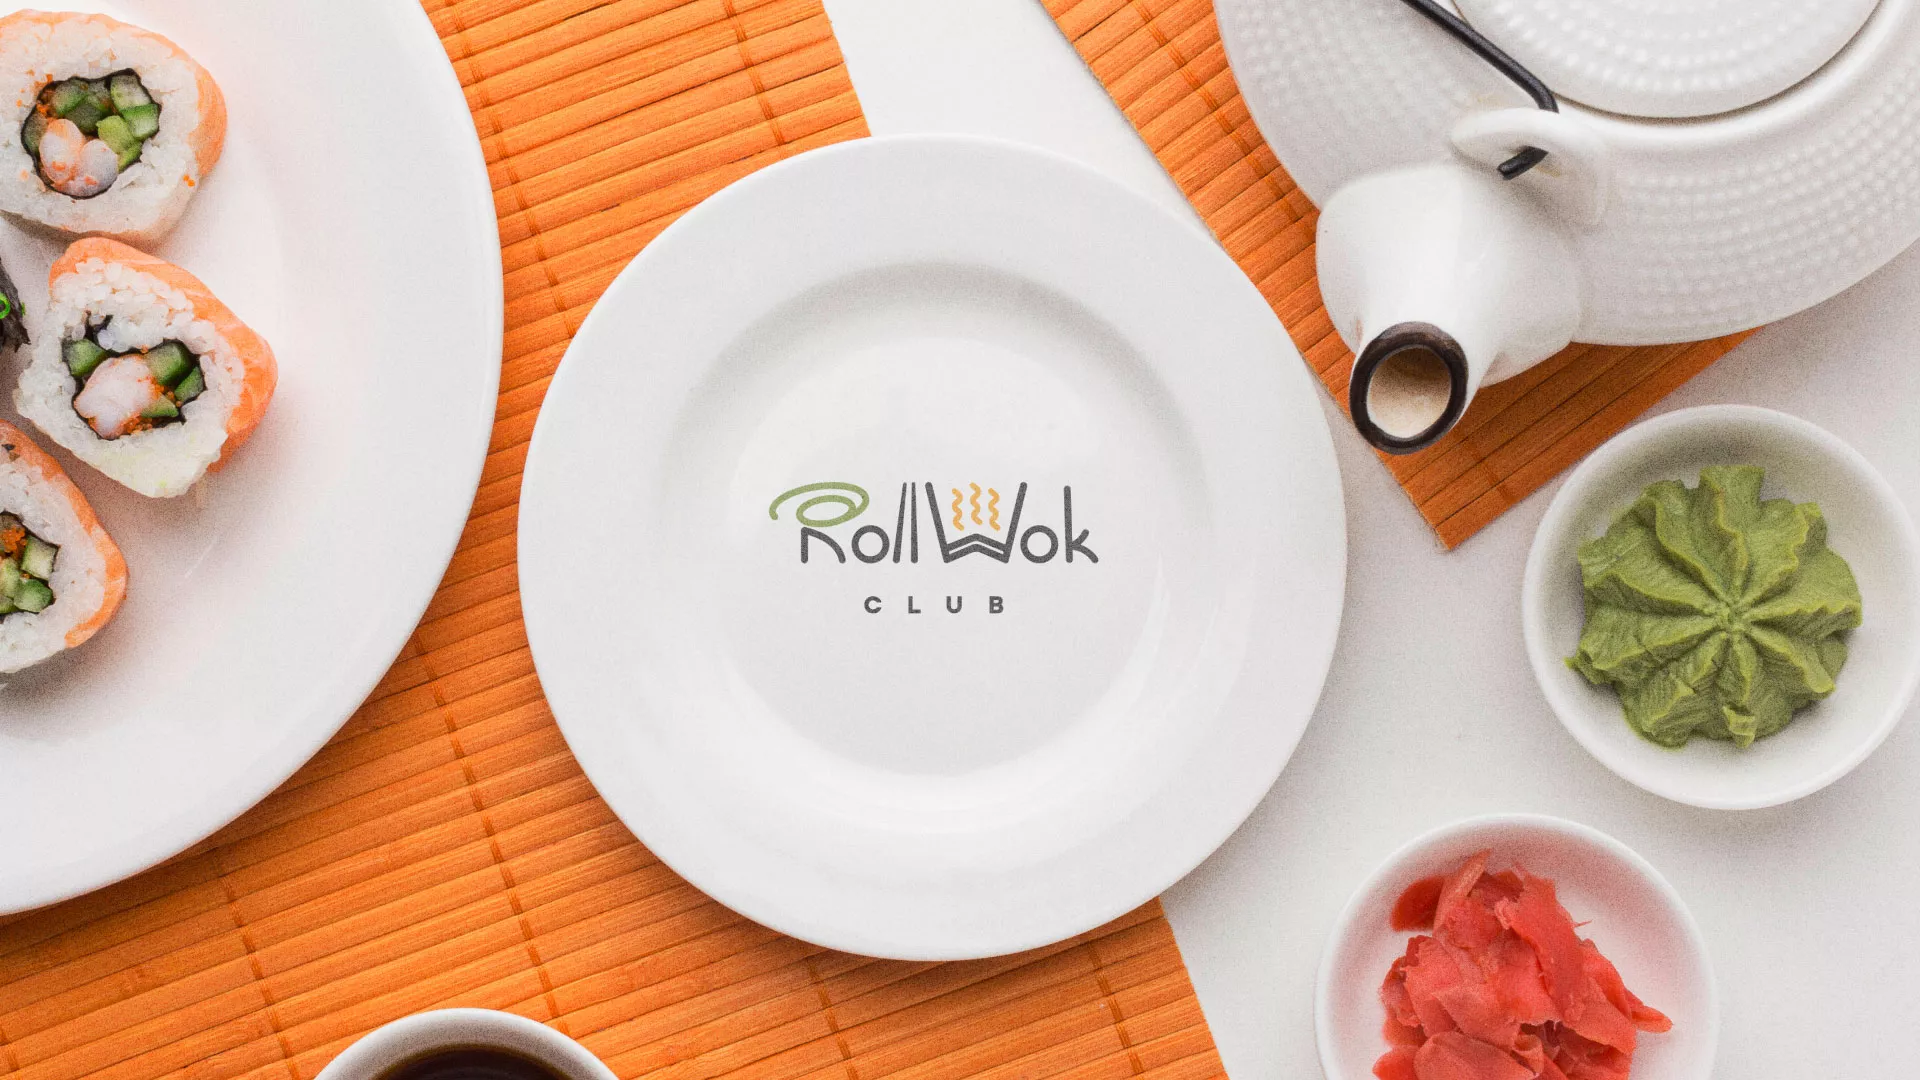 Разработка логотипа и фирменного стиля суши-бара «Roll Wok Club» в Егорьевске